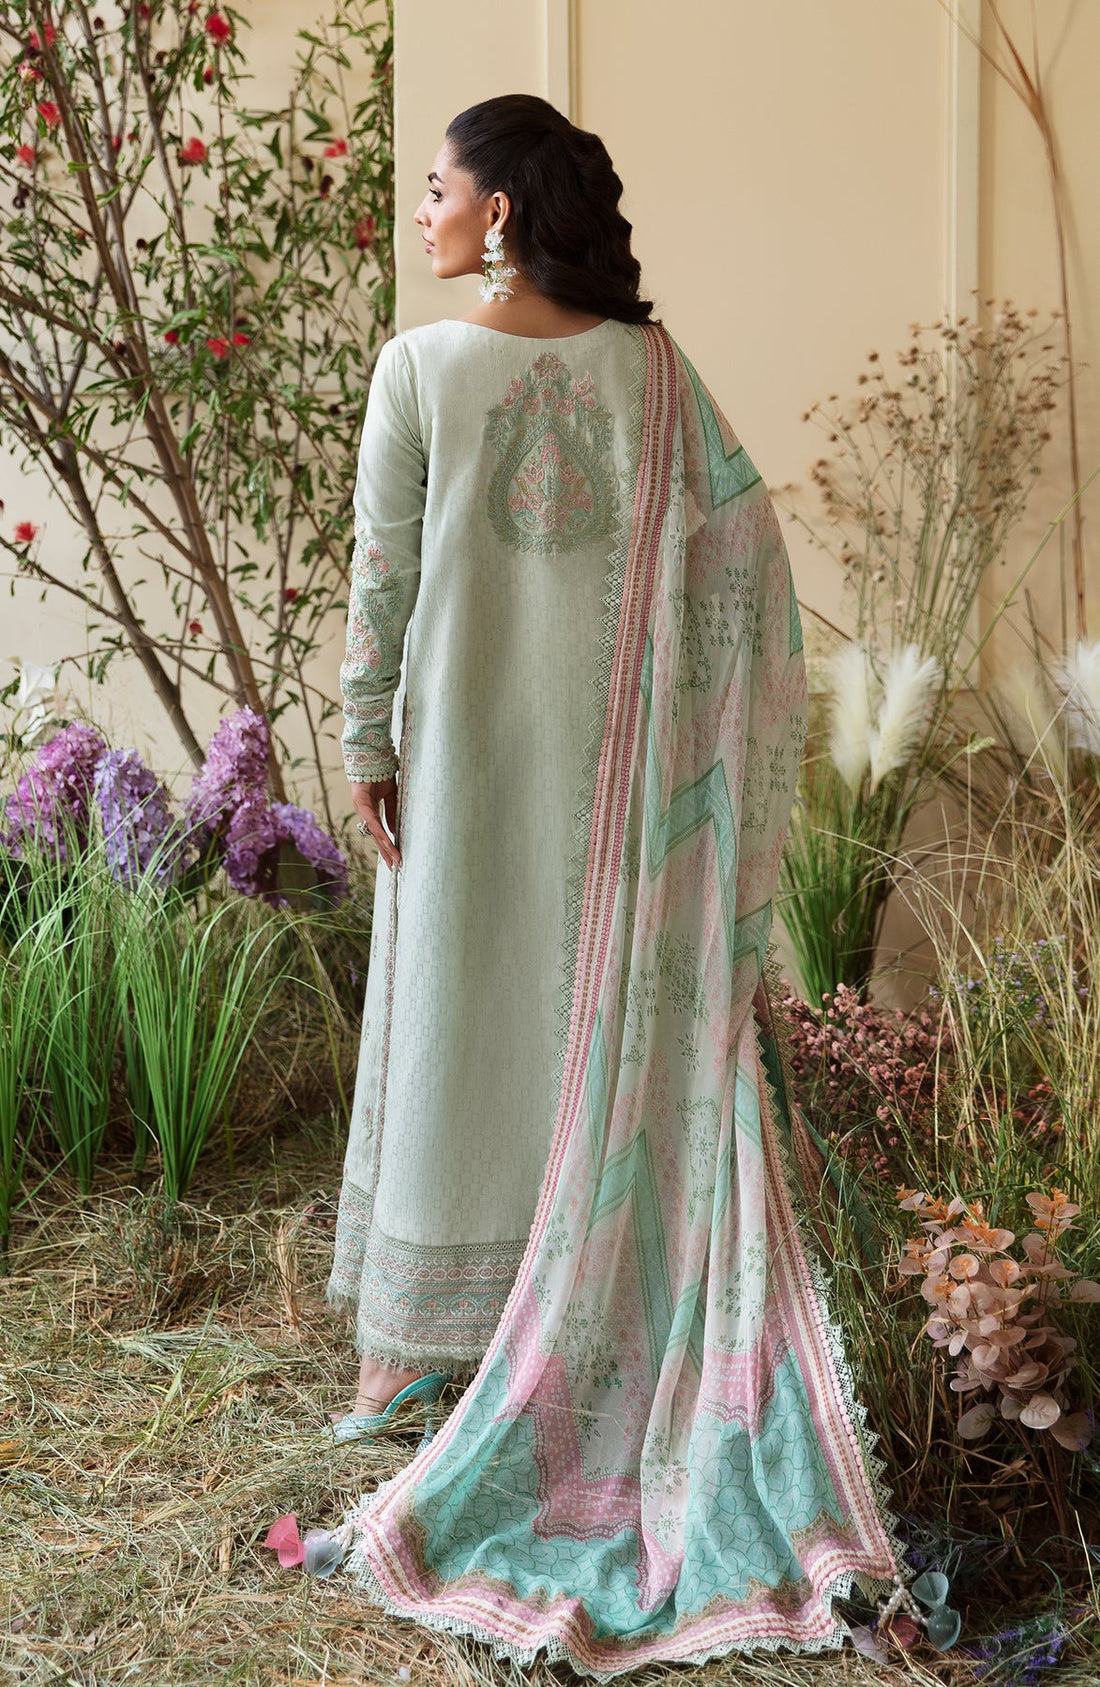 Zevk | Flora Festive Lawn | BLOSSOM - Khanumjan  Pakistani Clothes and Designer Dresses in UK, USA 